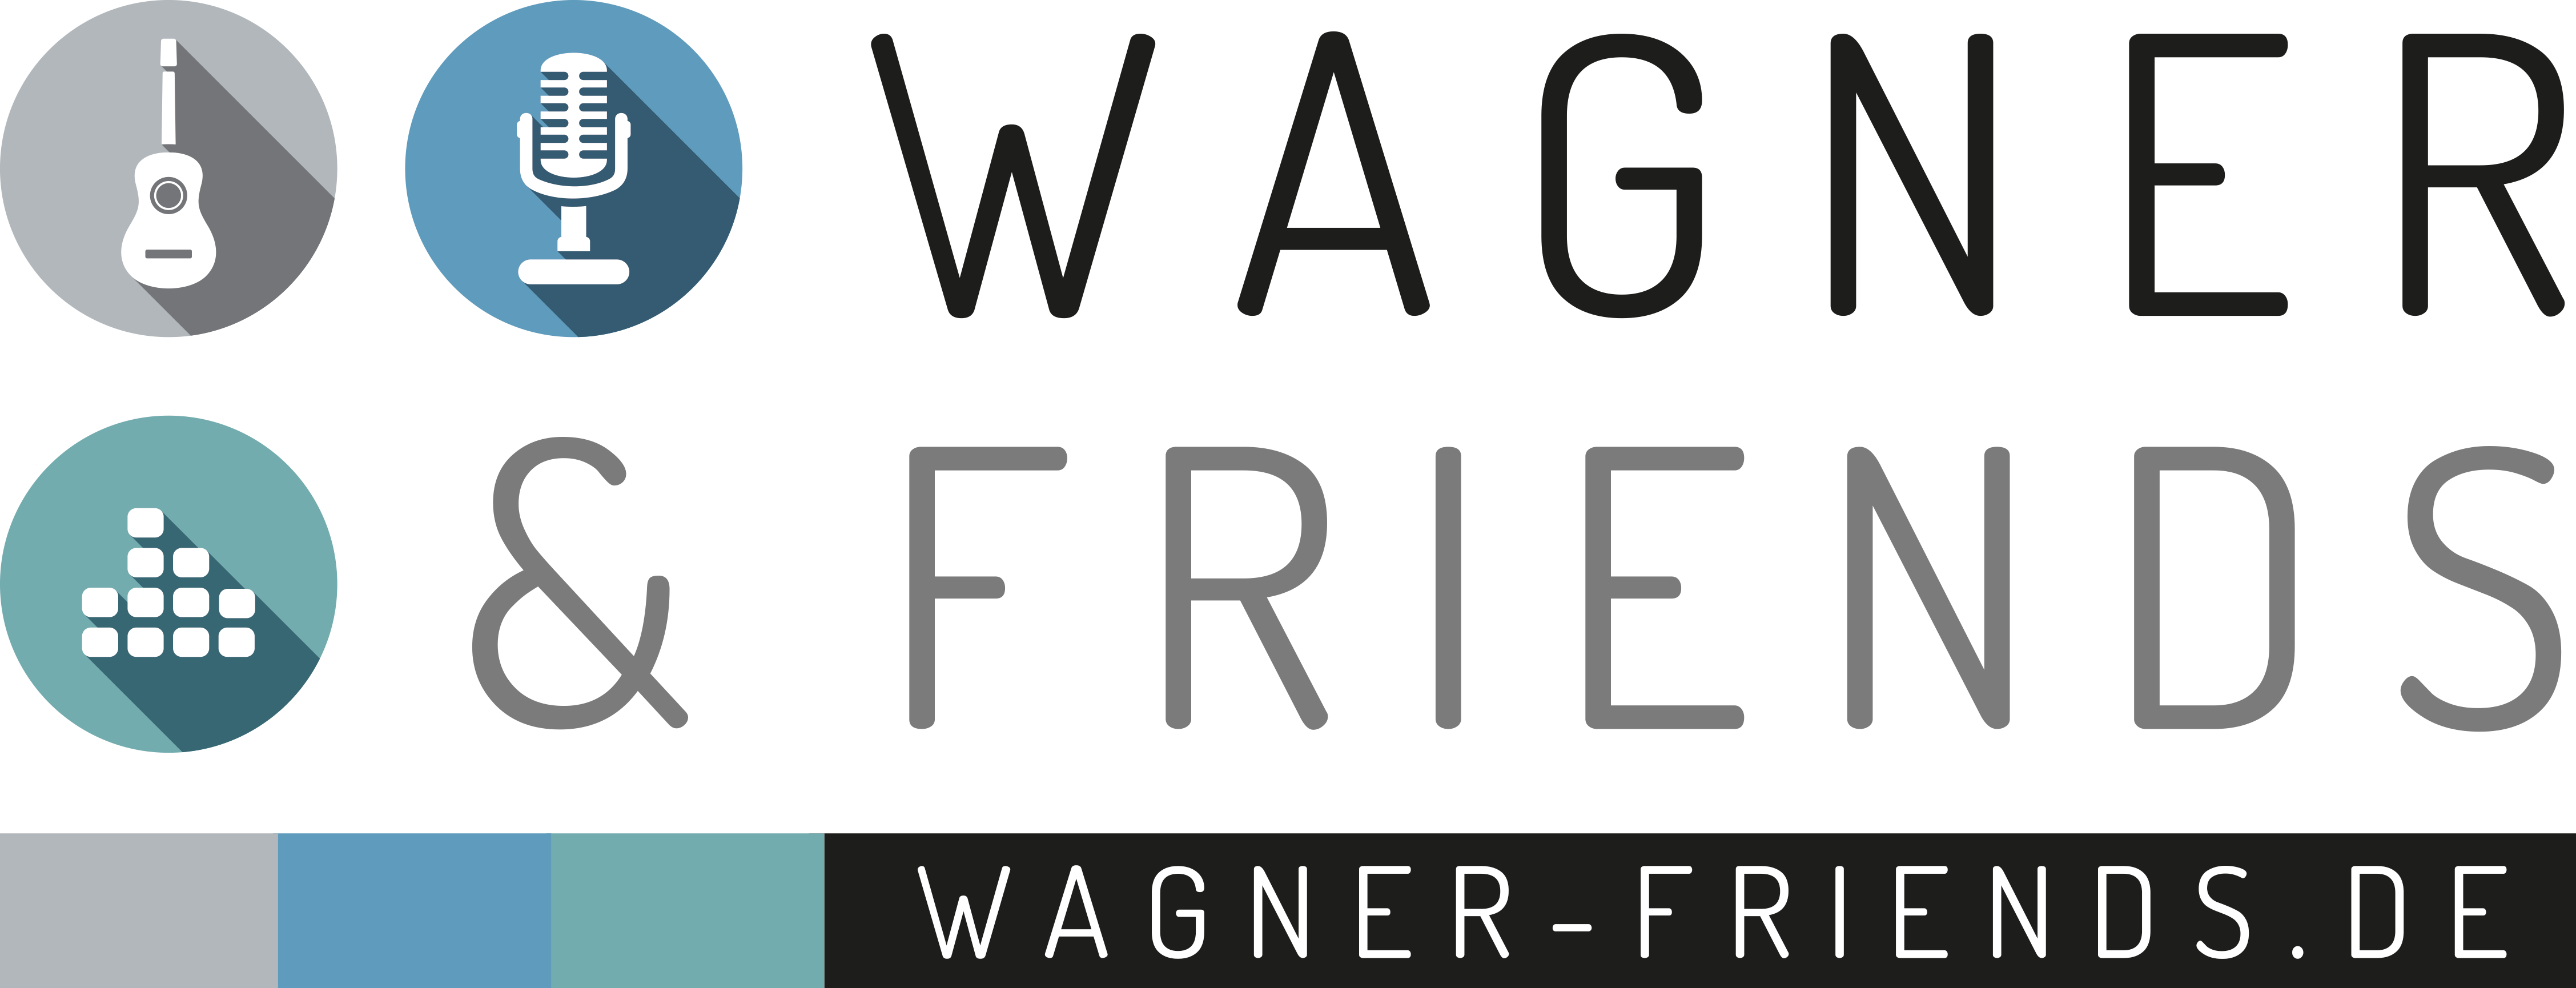 (c) Wagner-friends.de